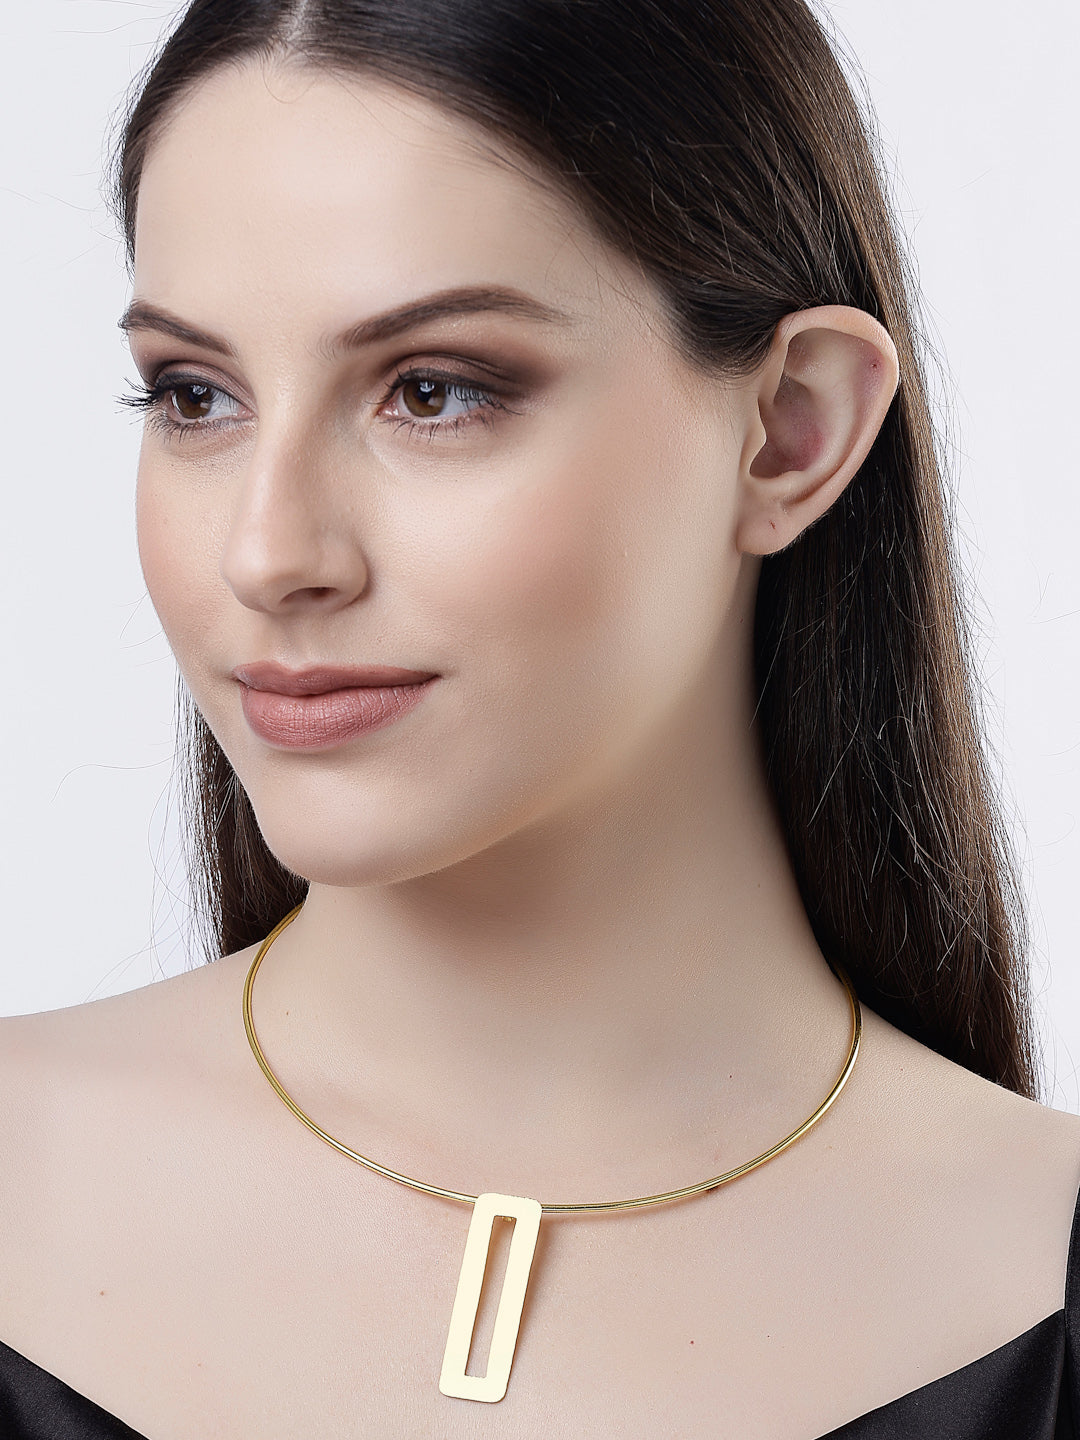 Women's Gold-plated Circular Choker Necklace - NVR